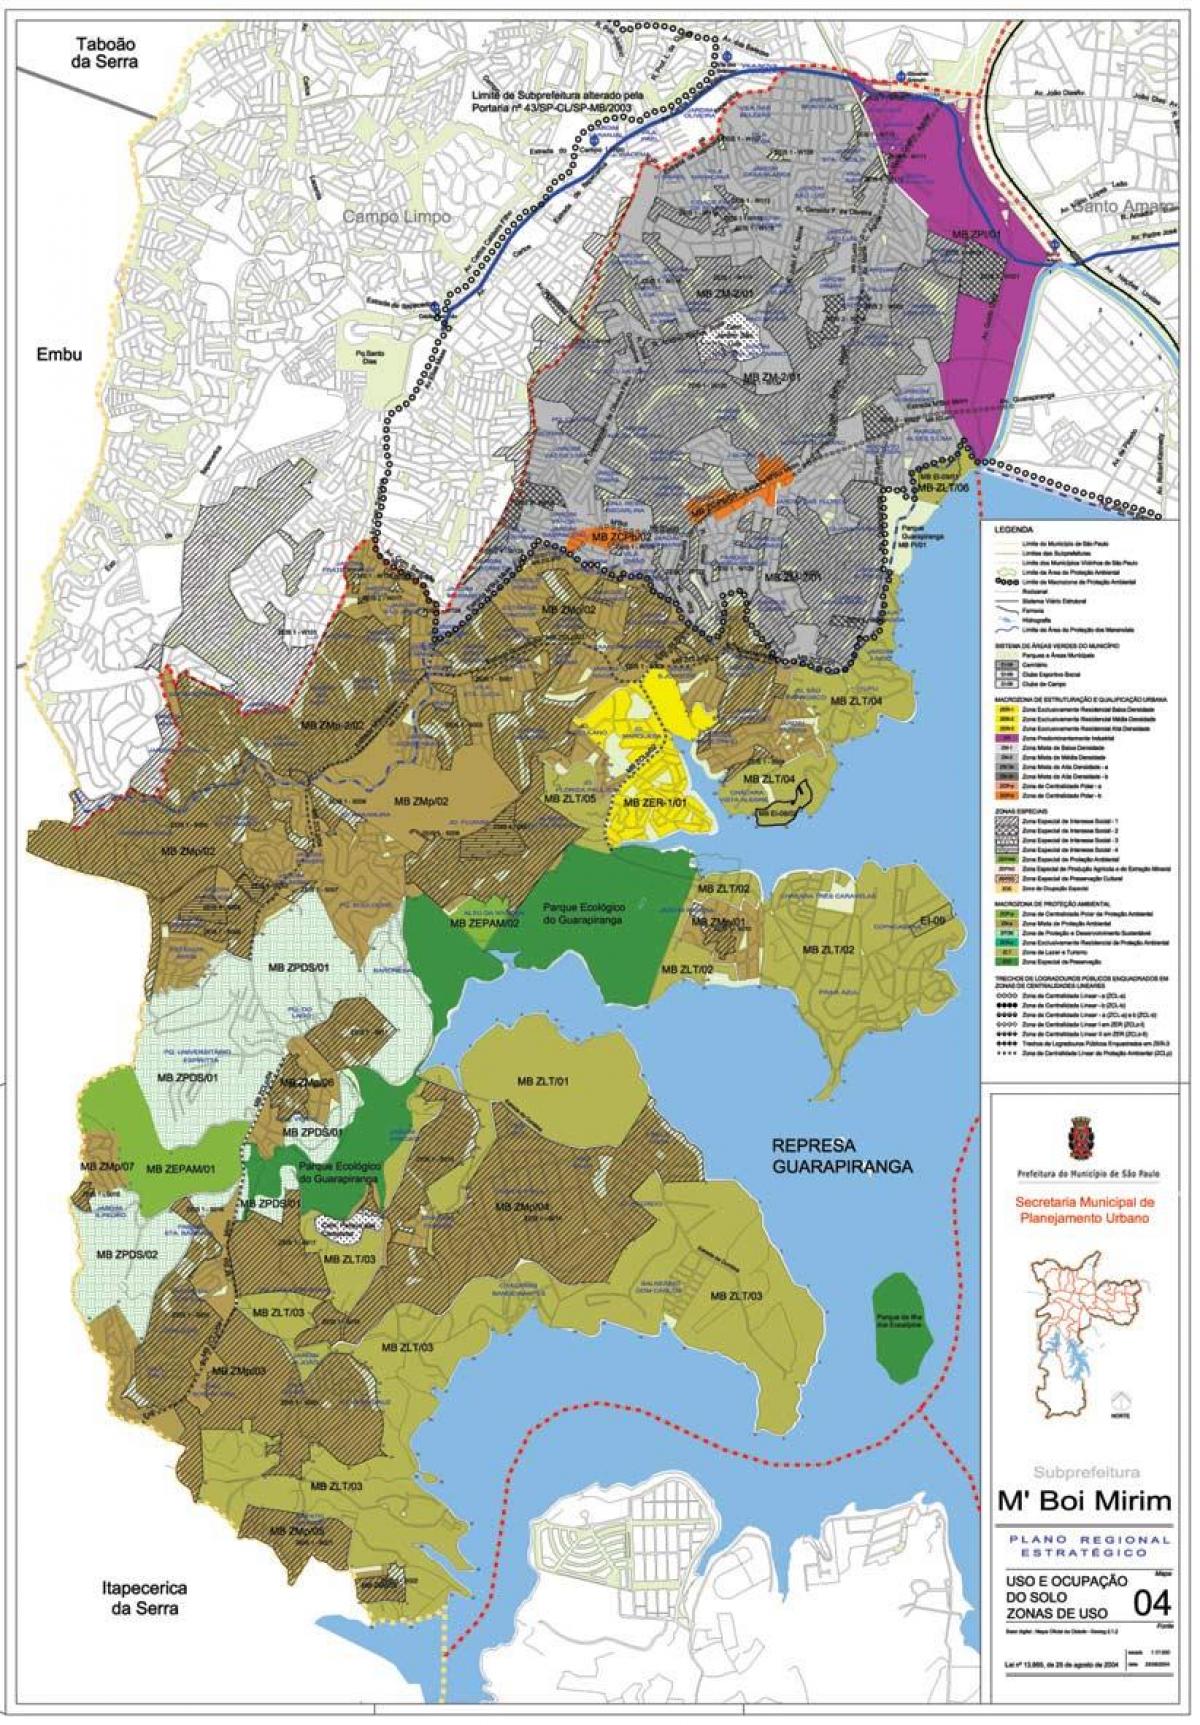 નકશો એમ'Boi Mirim સાઓ પાઉલો - વ્યવસાય જમીન